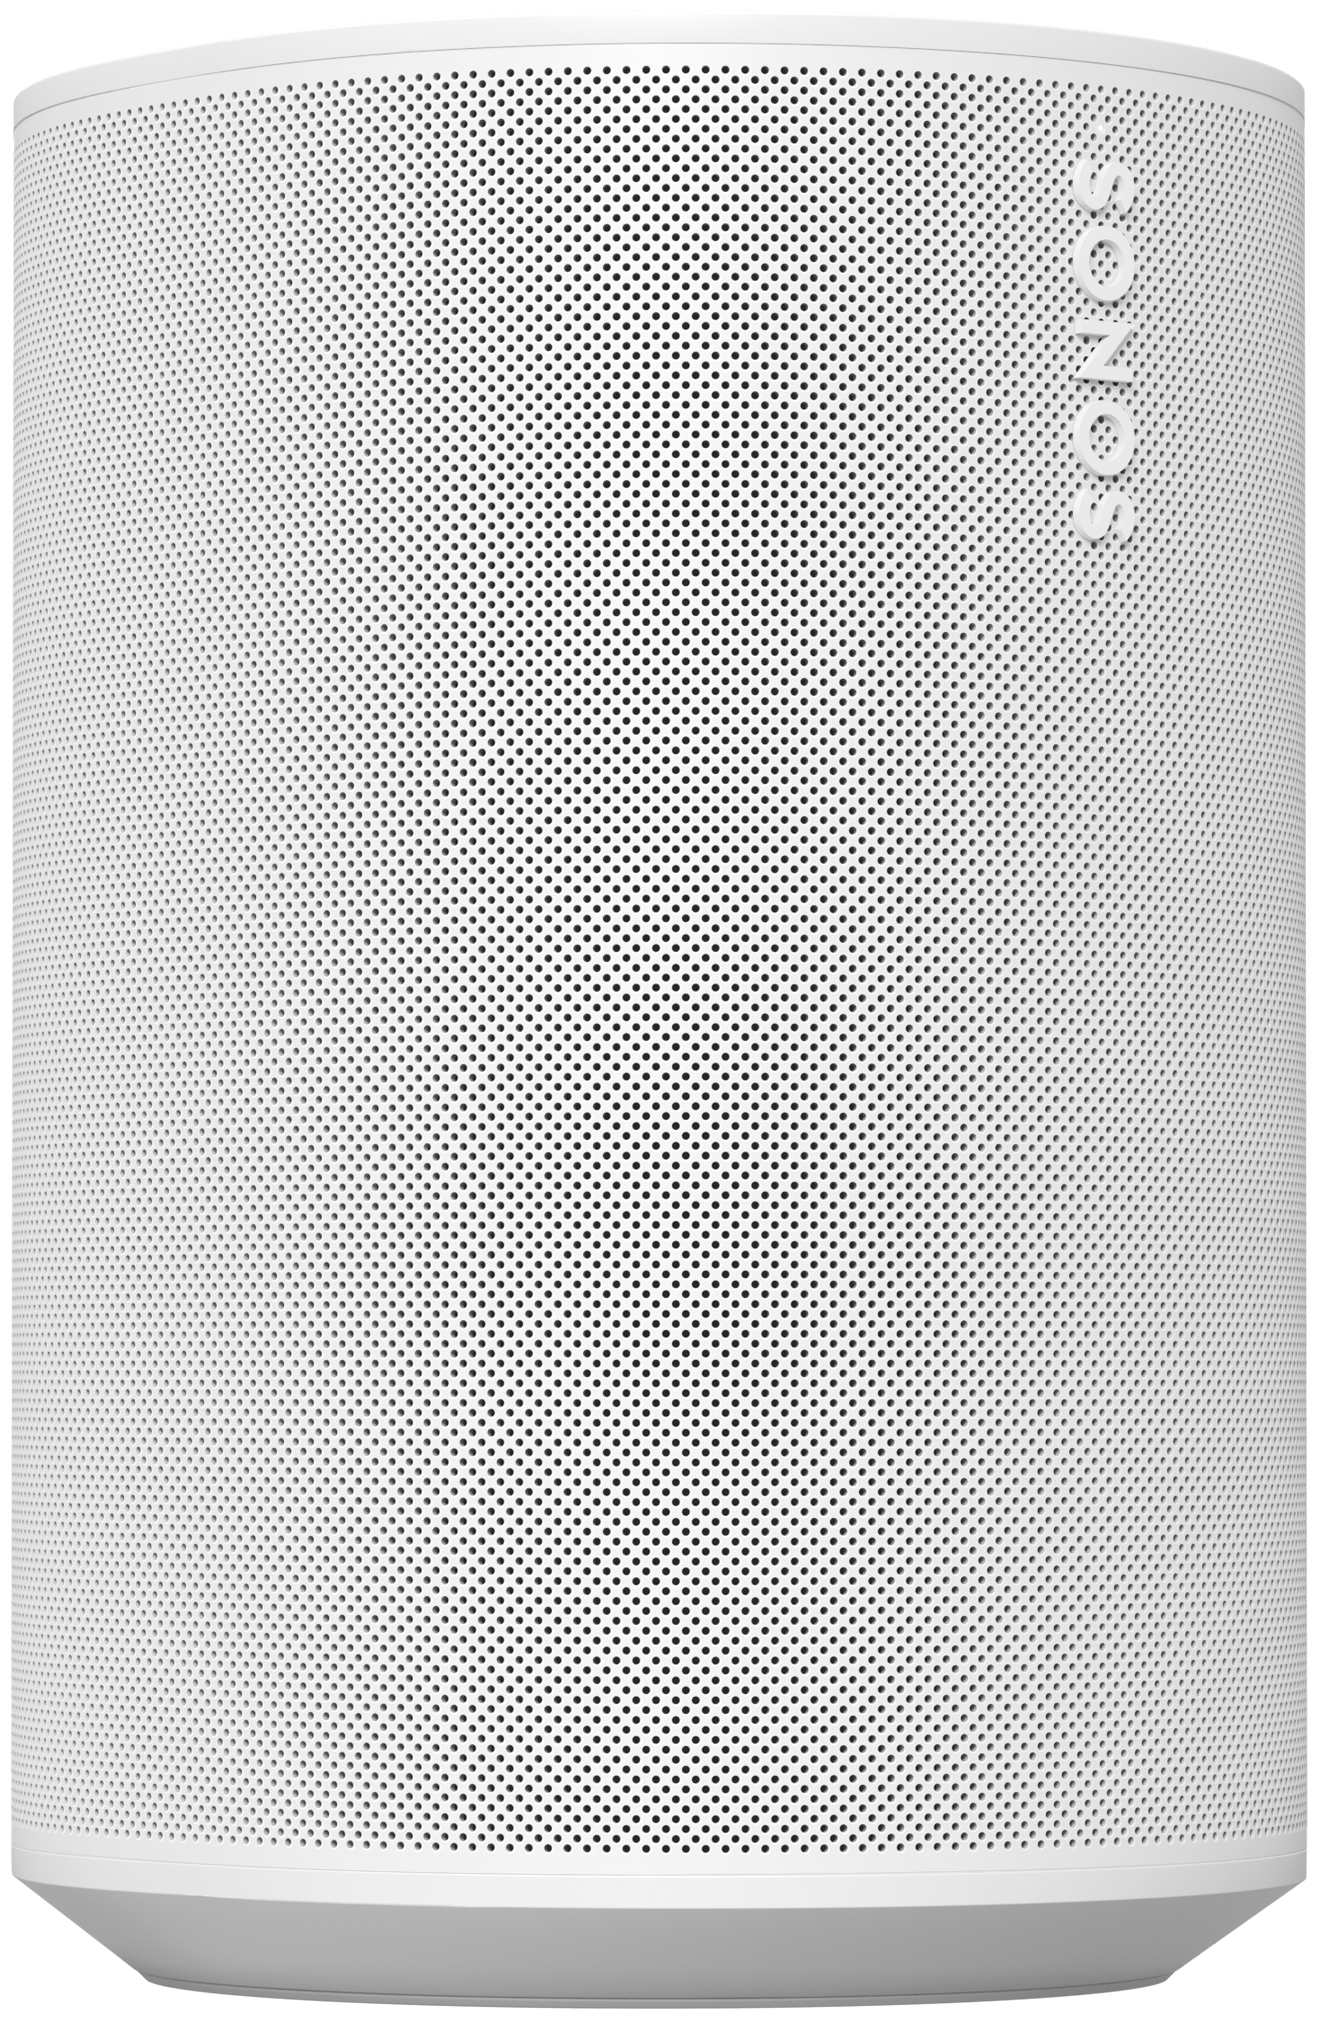 von Era Wlan expert Sonos (Weiß) Lautsprecher Bluetooth Technomarkt 100